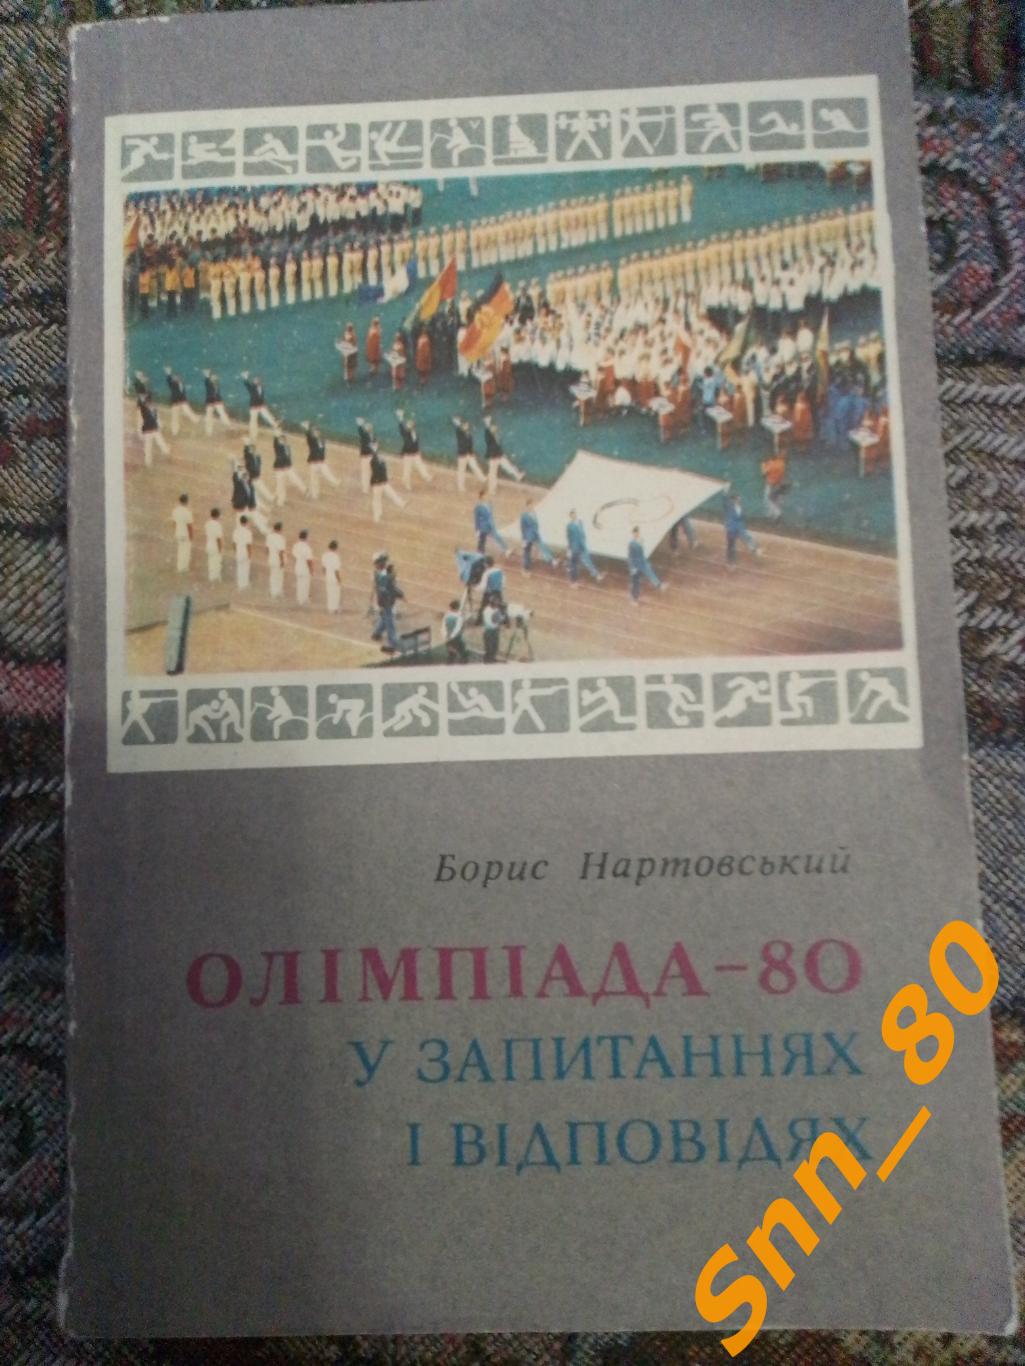 10 Олимпиада-80(1980) В вопросах и ответах Б.Нартовский 1982 Киев